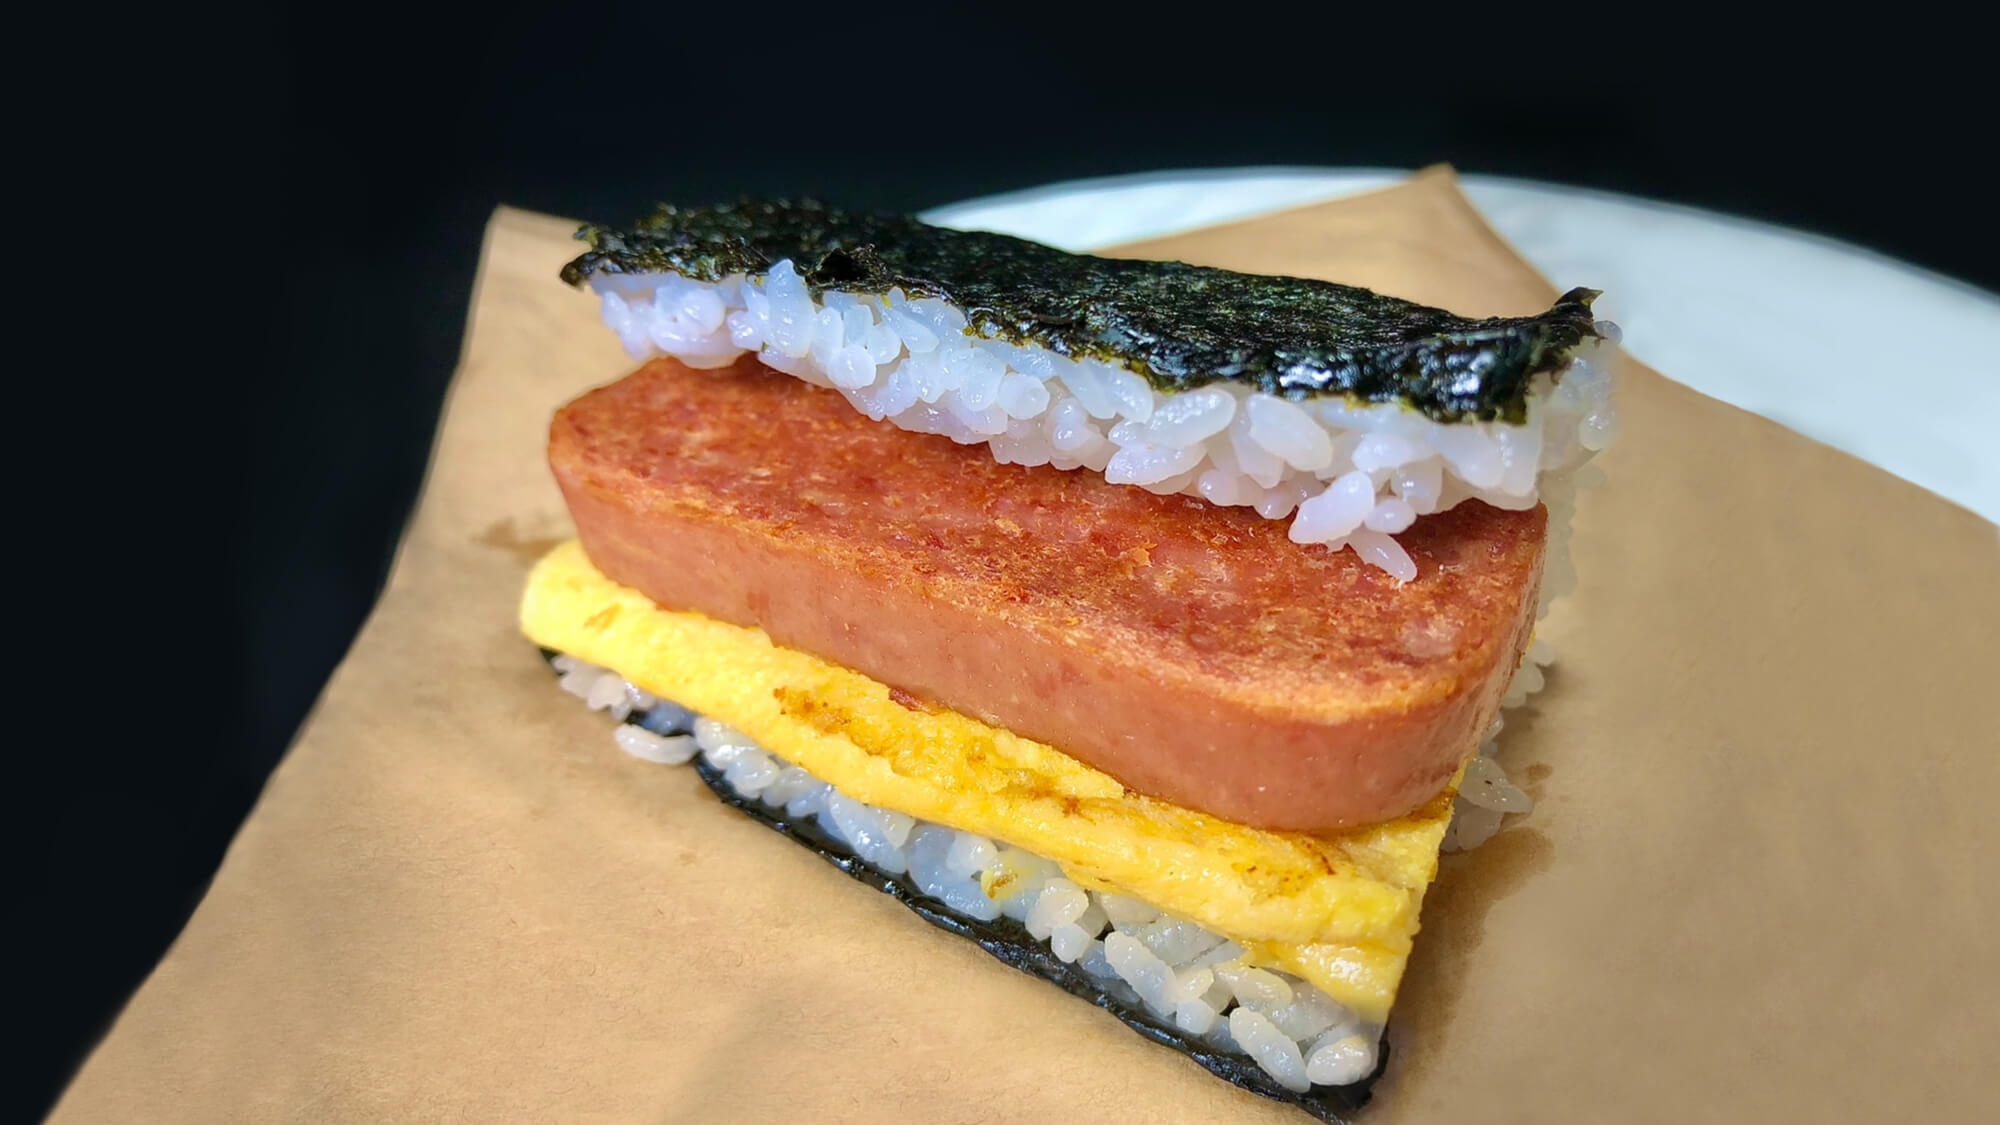 沖縄のソウルフード「ポークたまごおにぎり」をテイクアウト☆手作り朝食セットで満腹♪